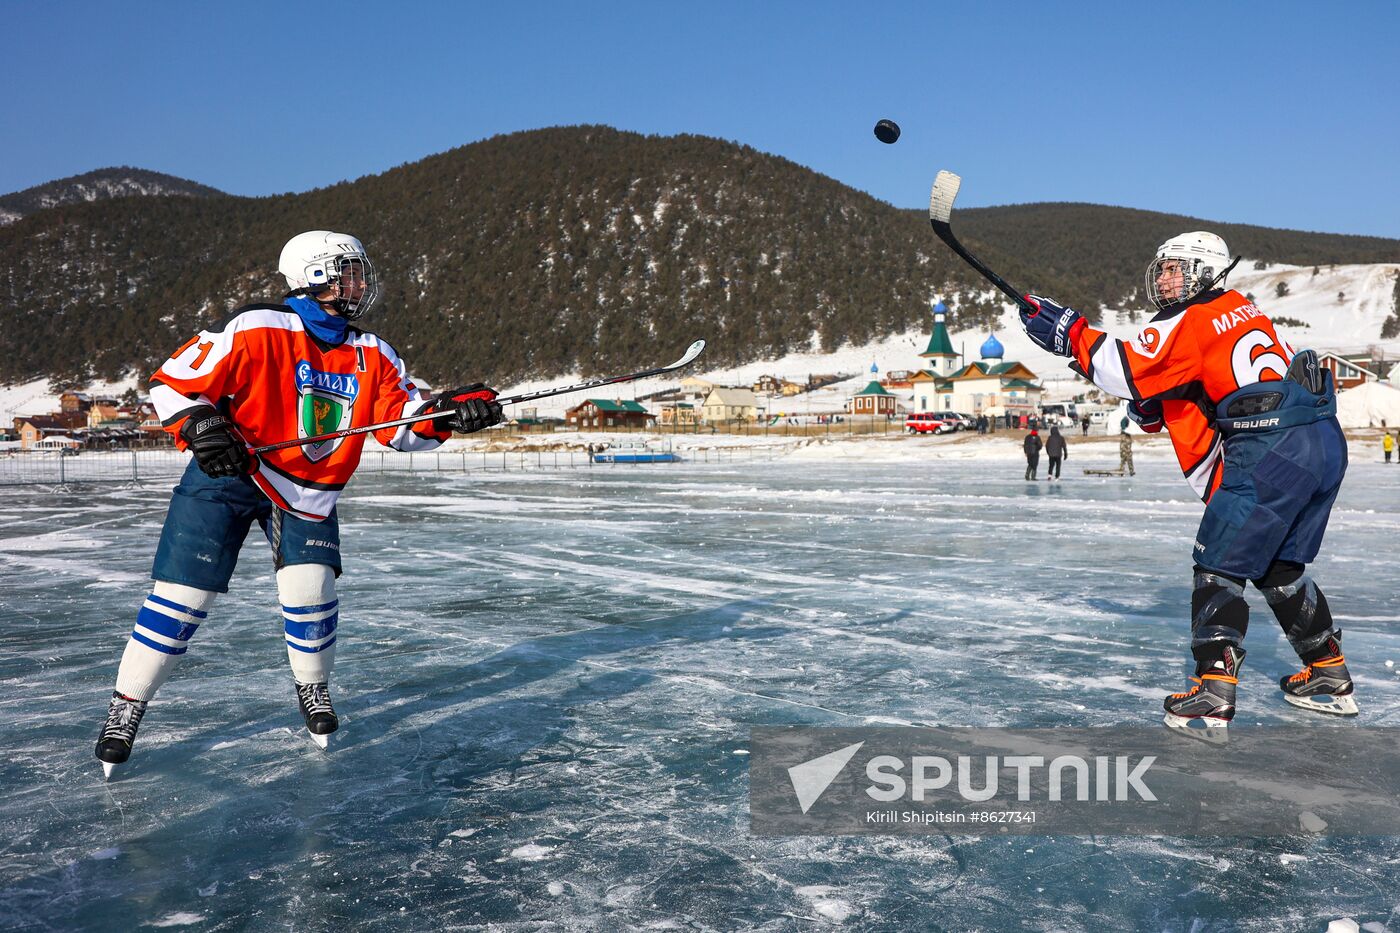 Russia Lake Baikal Ice Hockey